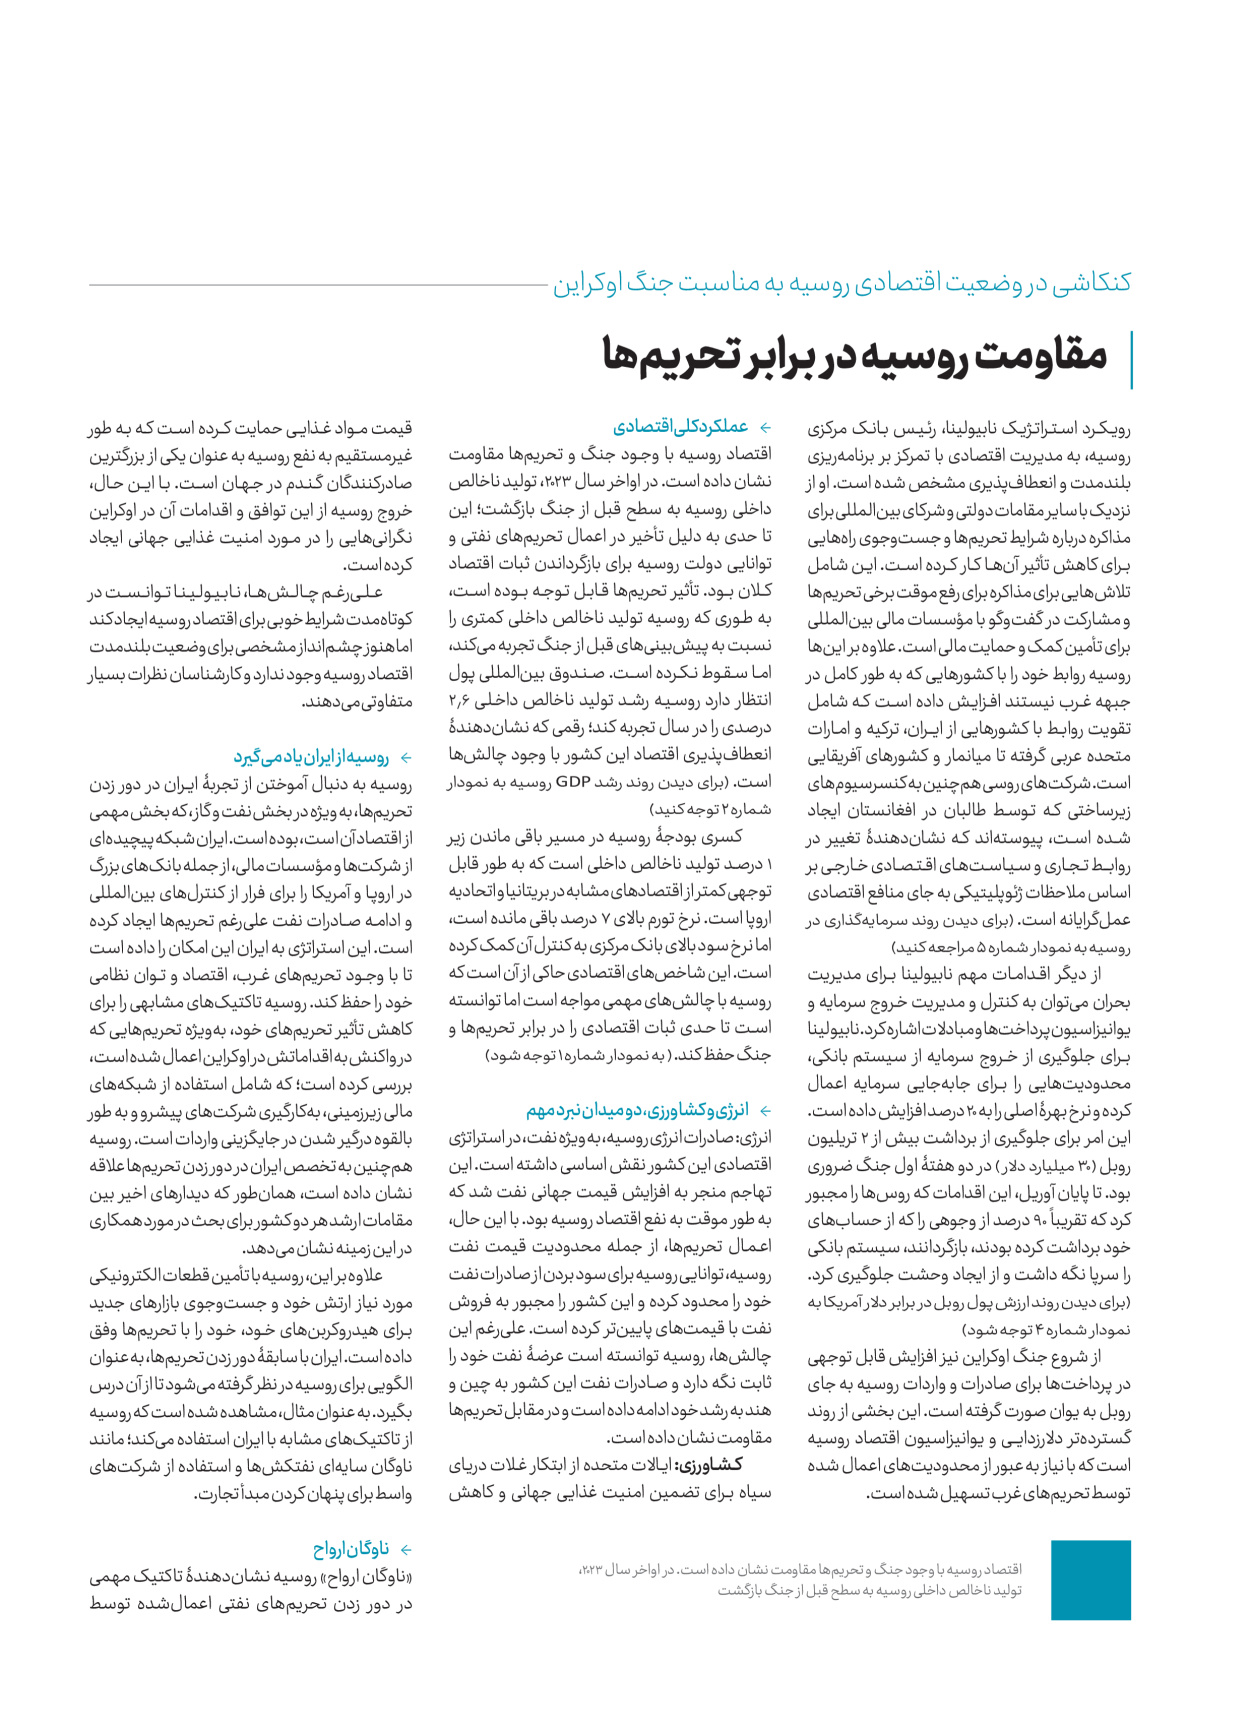 روزنامه ایران - ویژه نامه کرانه ۱ - ۲۶ اسفند ۱۴۰۲ - صفحه ۸۲